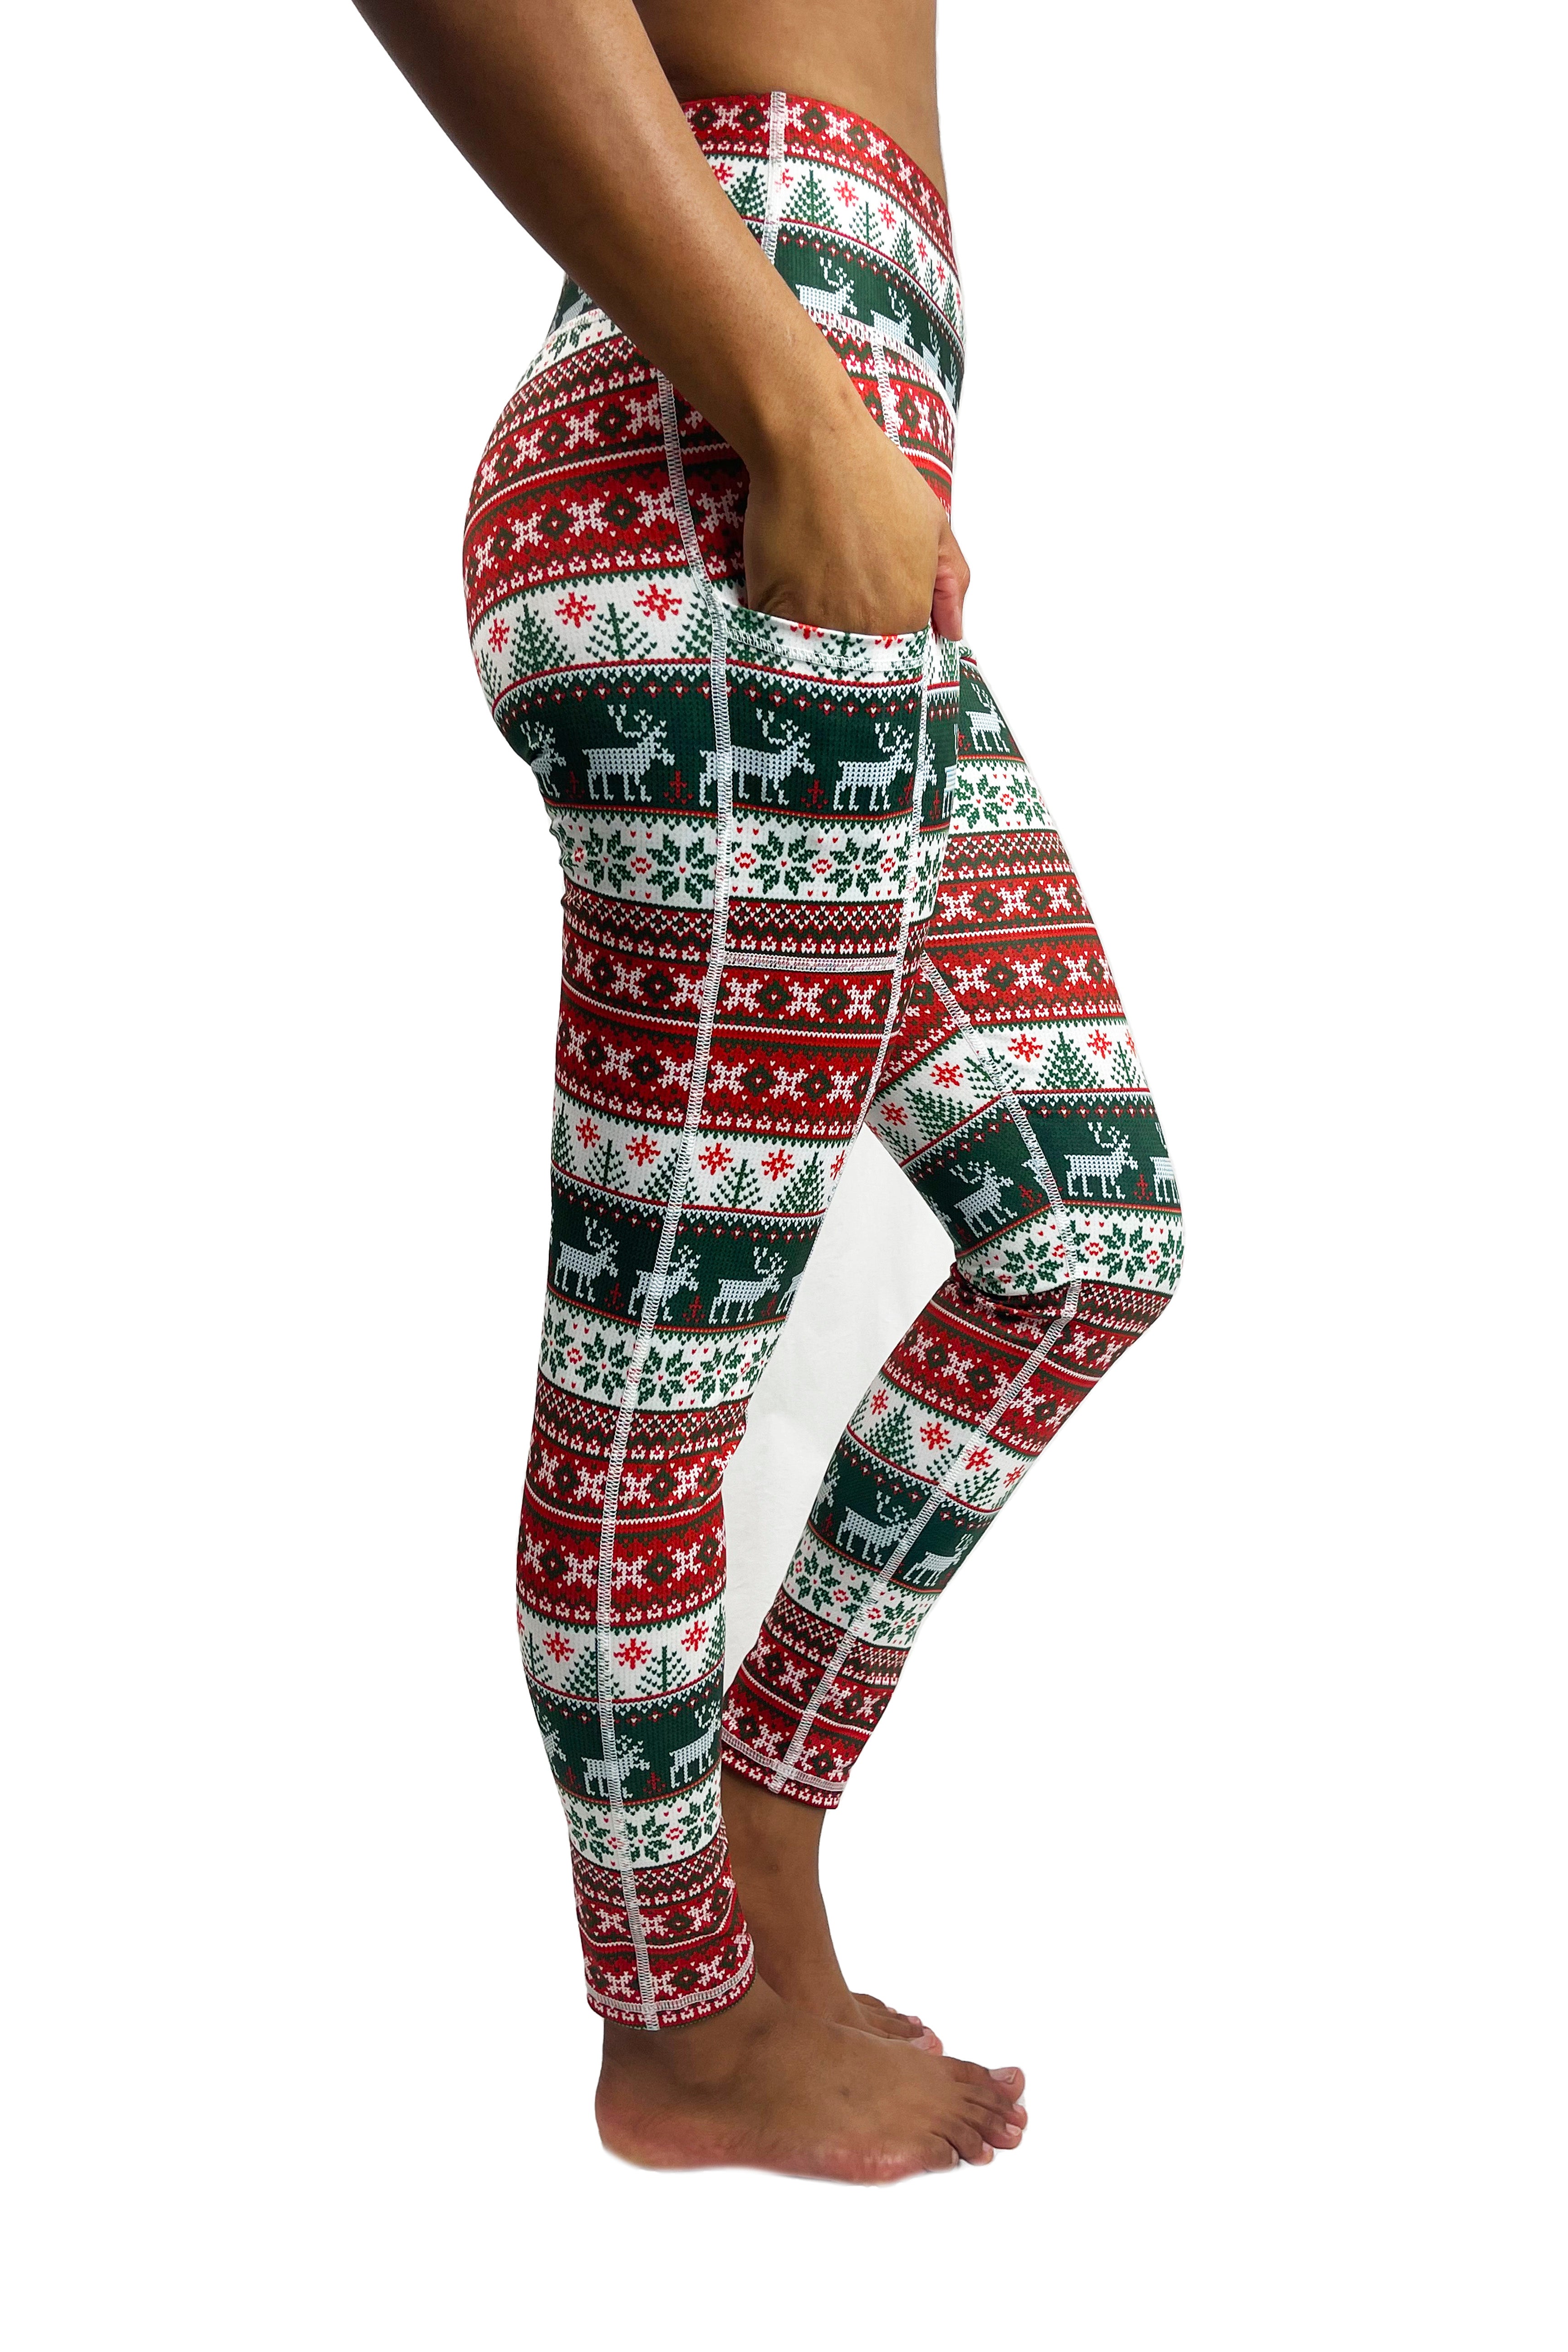 Bronco Babes Ugly Christmas Yoga Leggings – Red | Bronco Babes